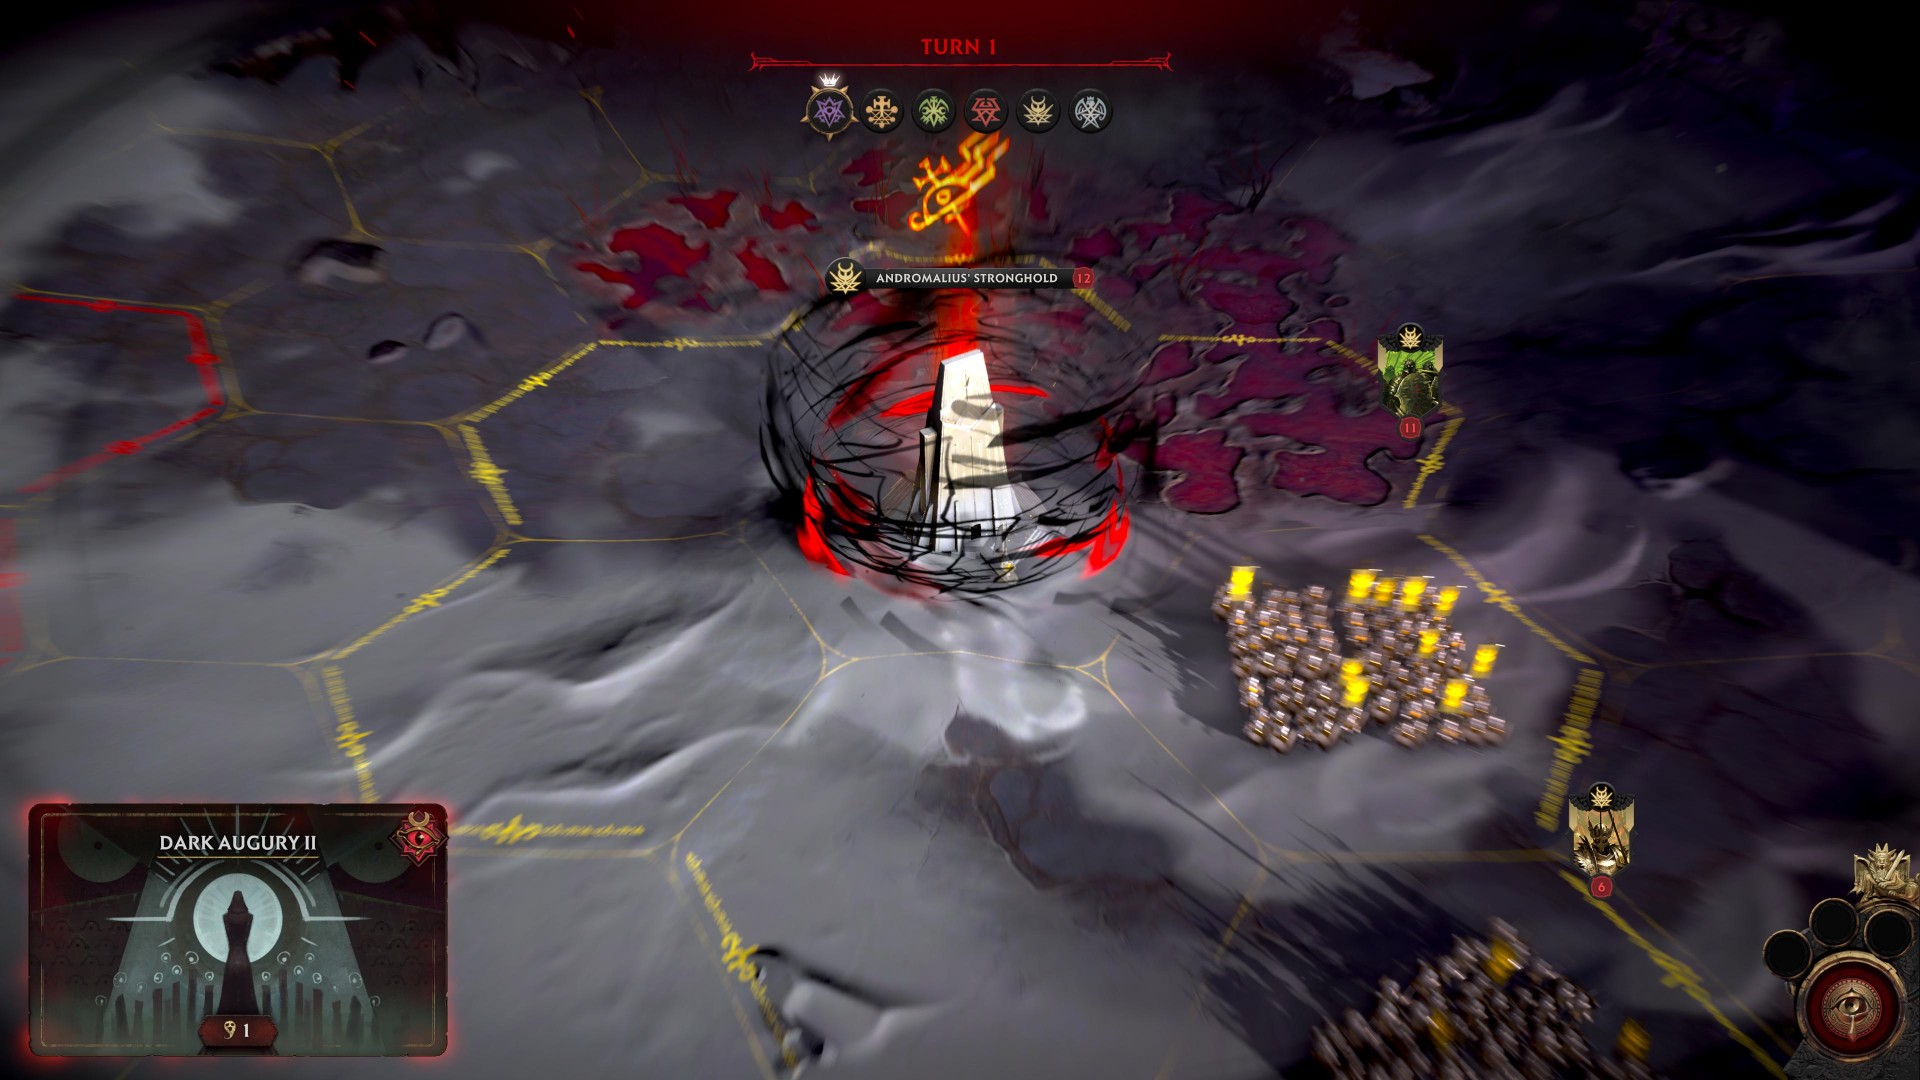 Solium Infernum Steam strategy game multiplayer: A hellish battlefield in strategy game Solium Infernum